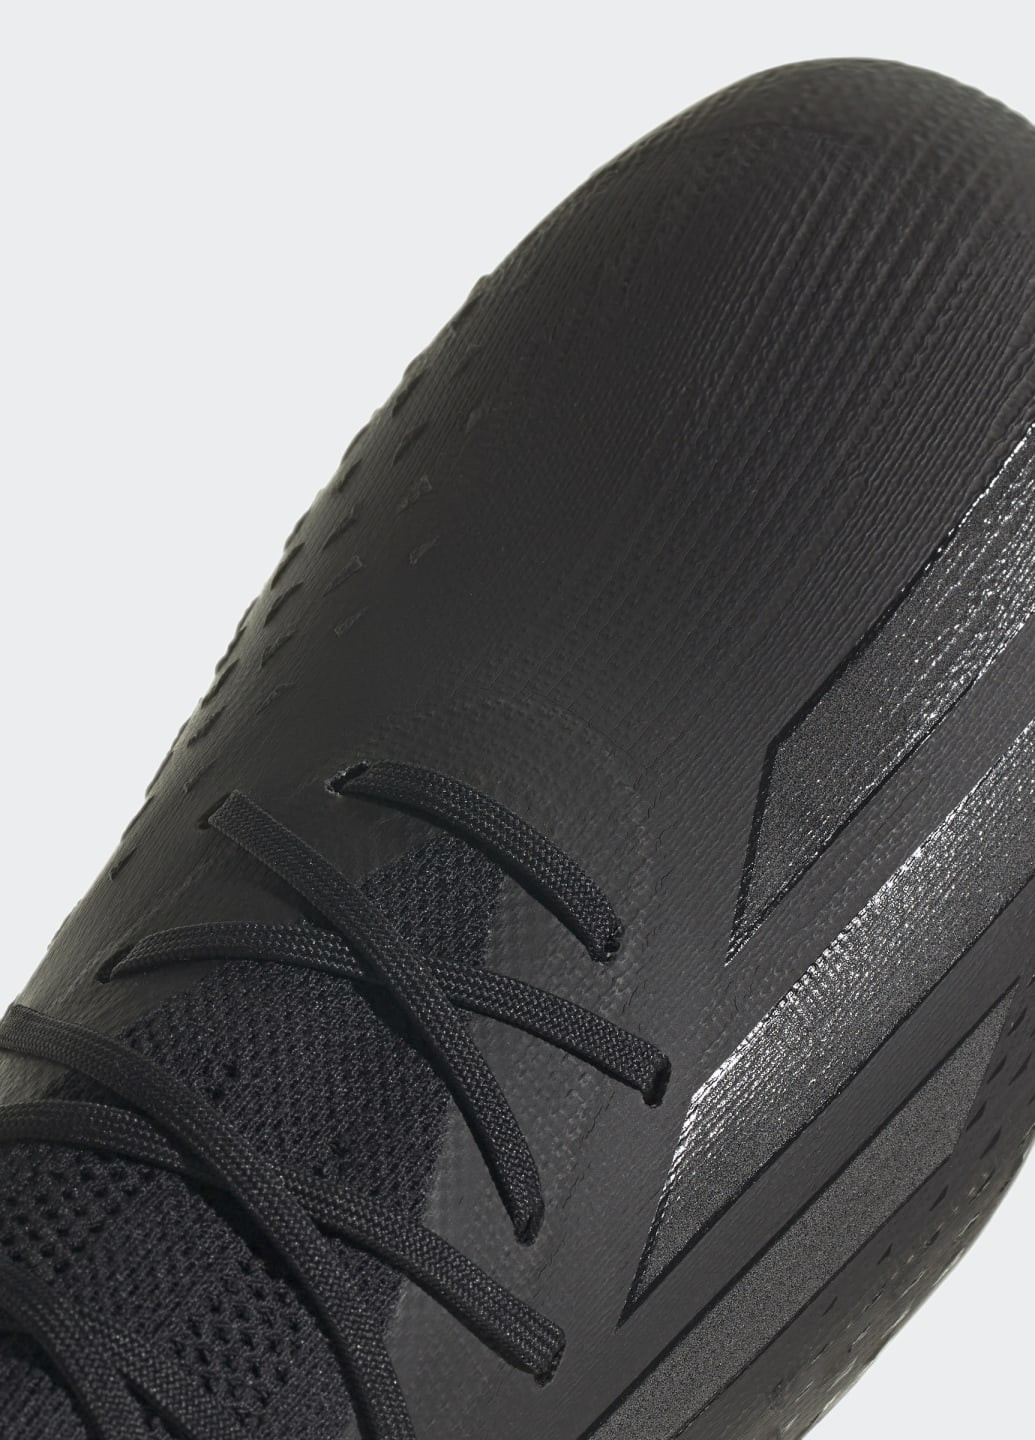 Чорні всесезонні футбольні бутси x speedportal.1 firm ground adidas